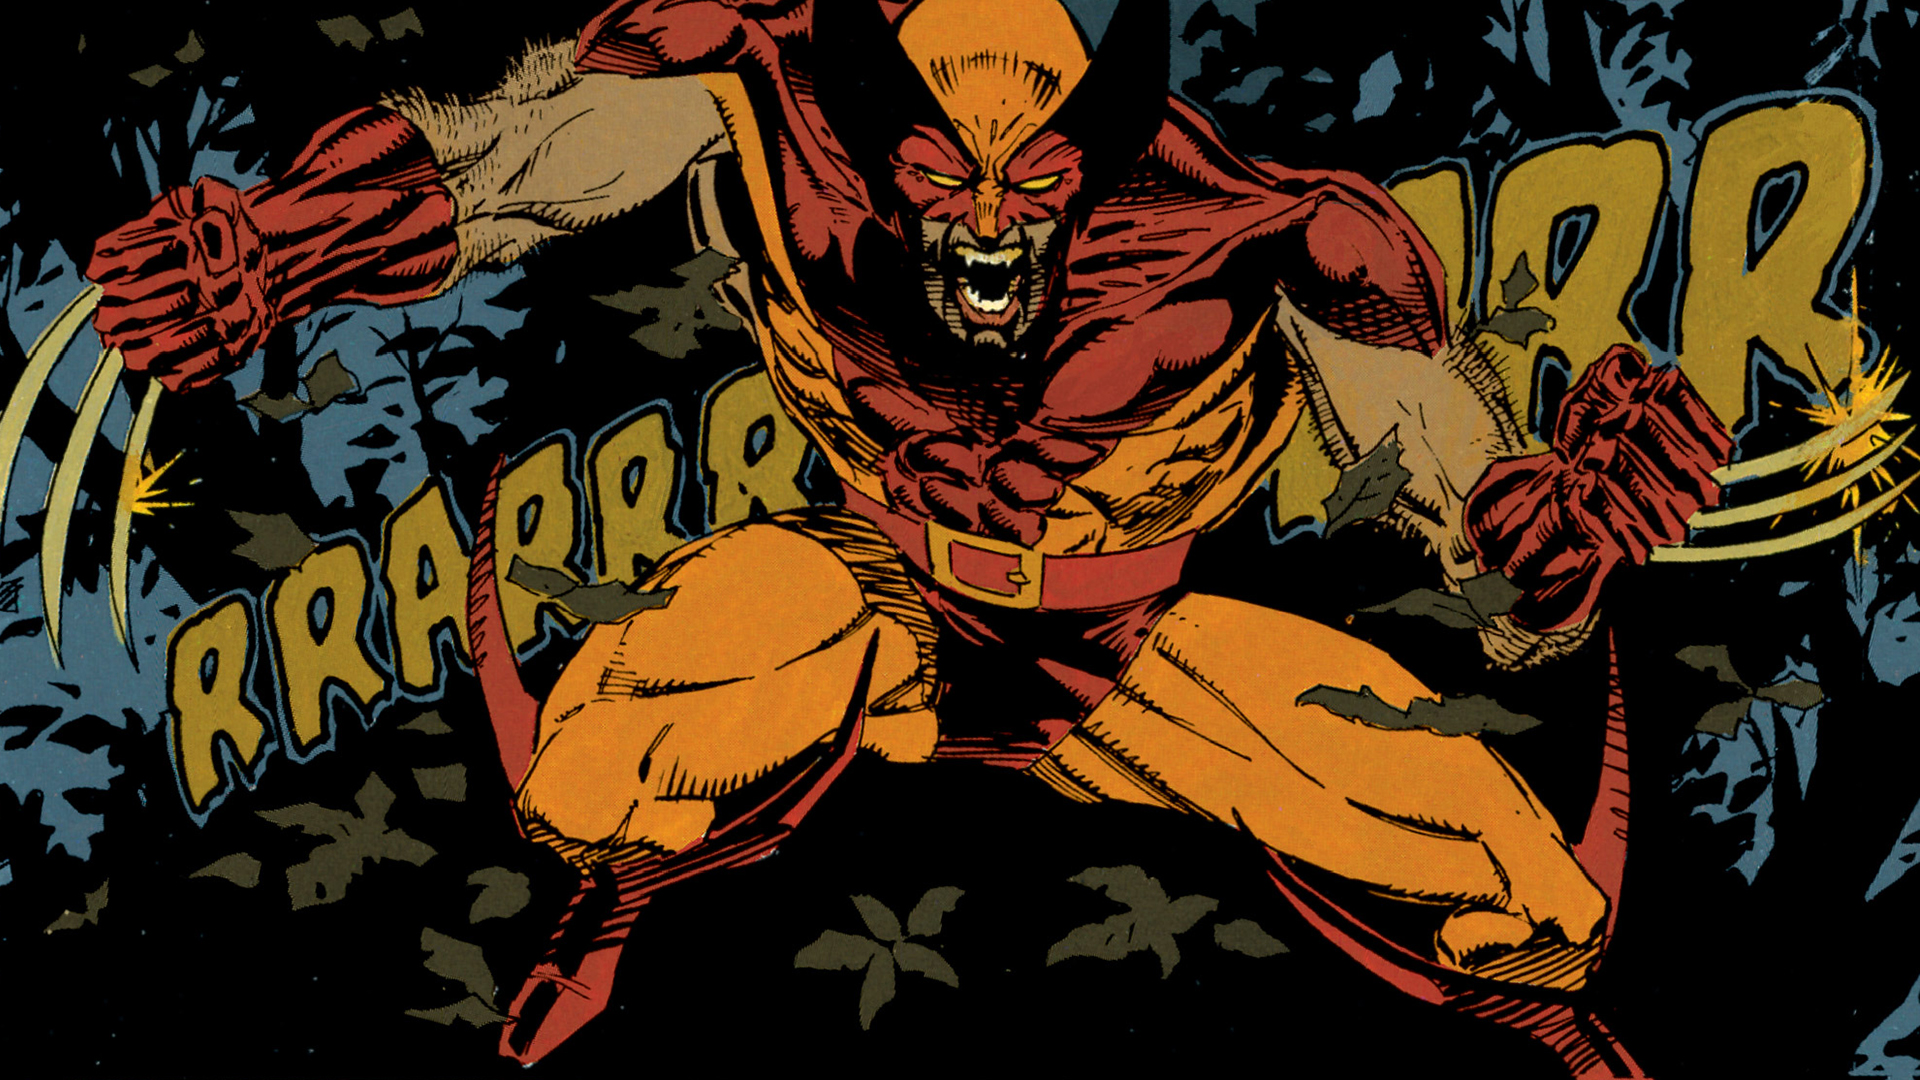 Wallpaper Logan, angry man, x-men, superhero